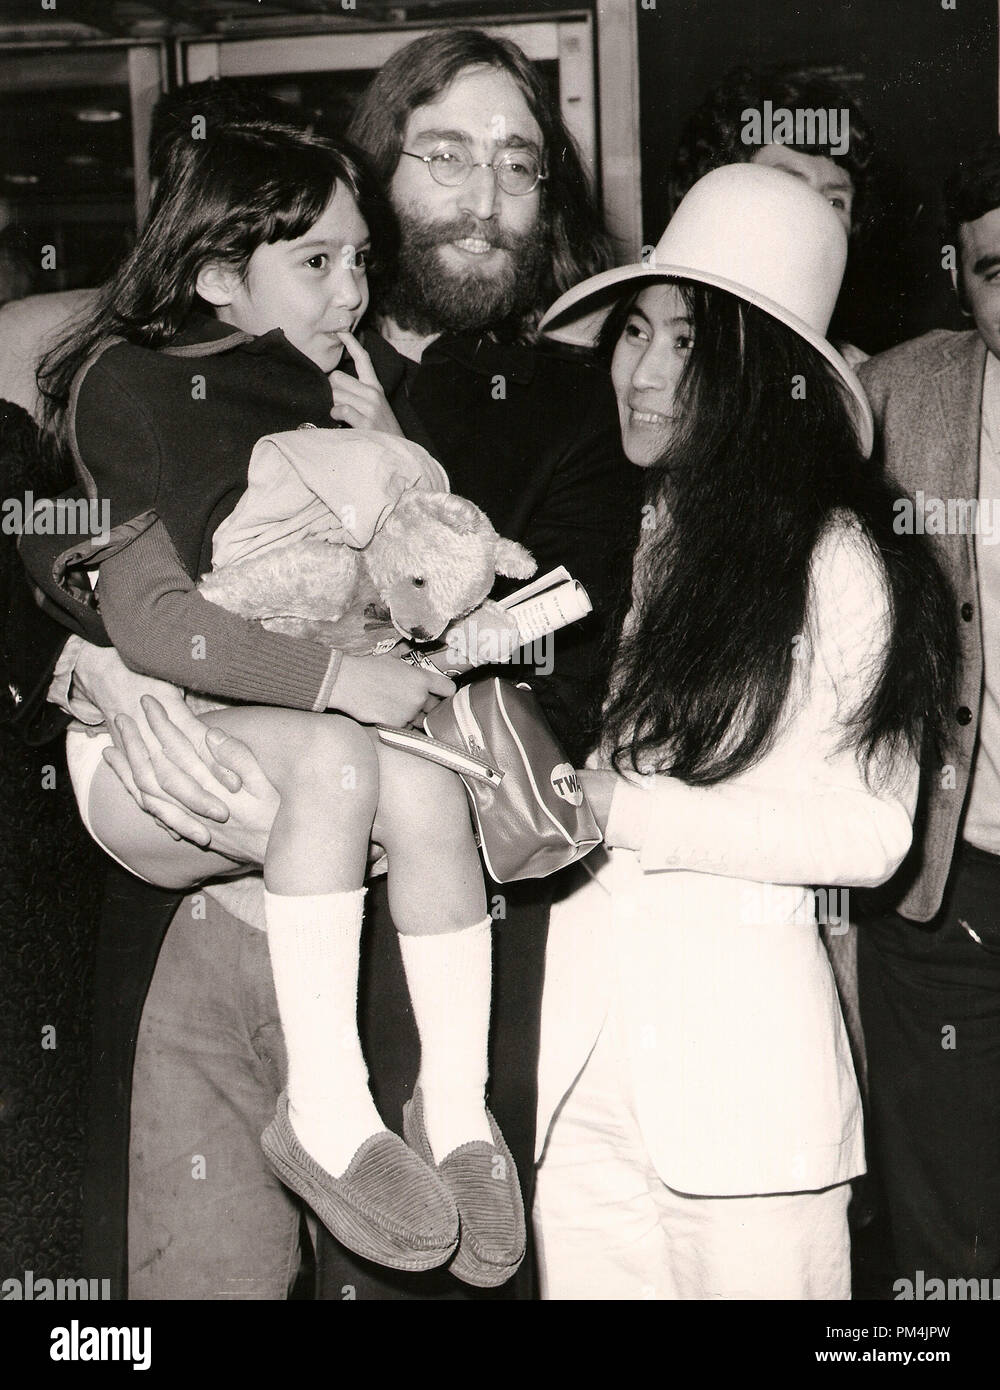 John Lennon und Yoko Ono mit Yoko's fünf Jahre alten Tochter, Kyyoko, von ihrem ehemaligen Ehemann Anthony Coz, 1969. Datei Referenz Nr. 1013 003 THA © GFS/Hollywood Archiv - Alle Rechte vorbehalten. Stockfoto